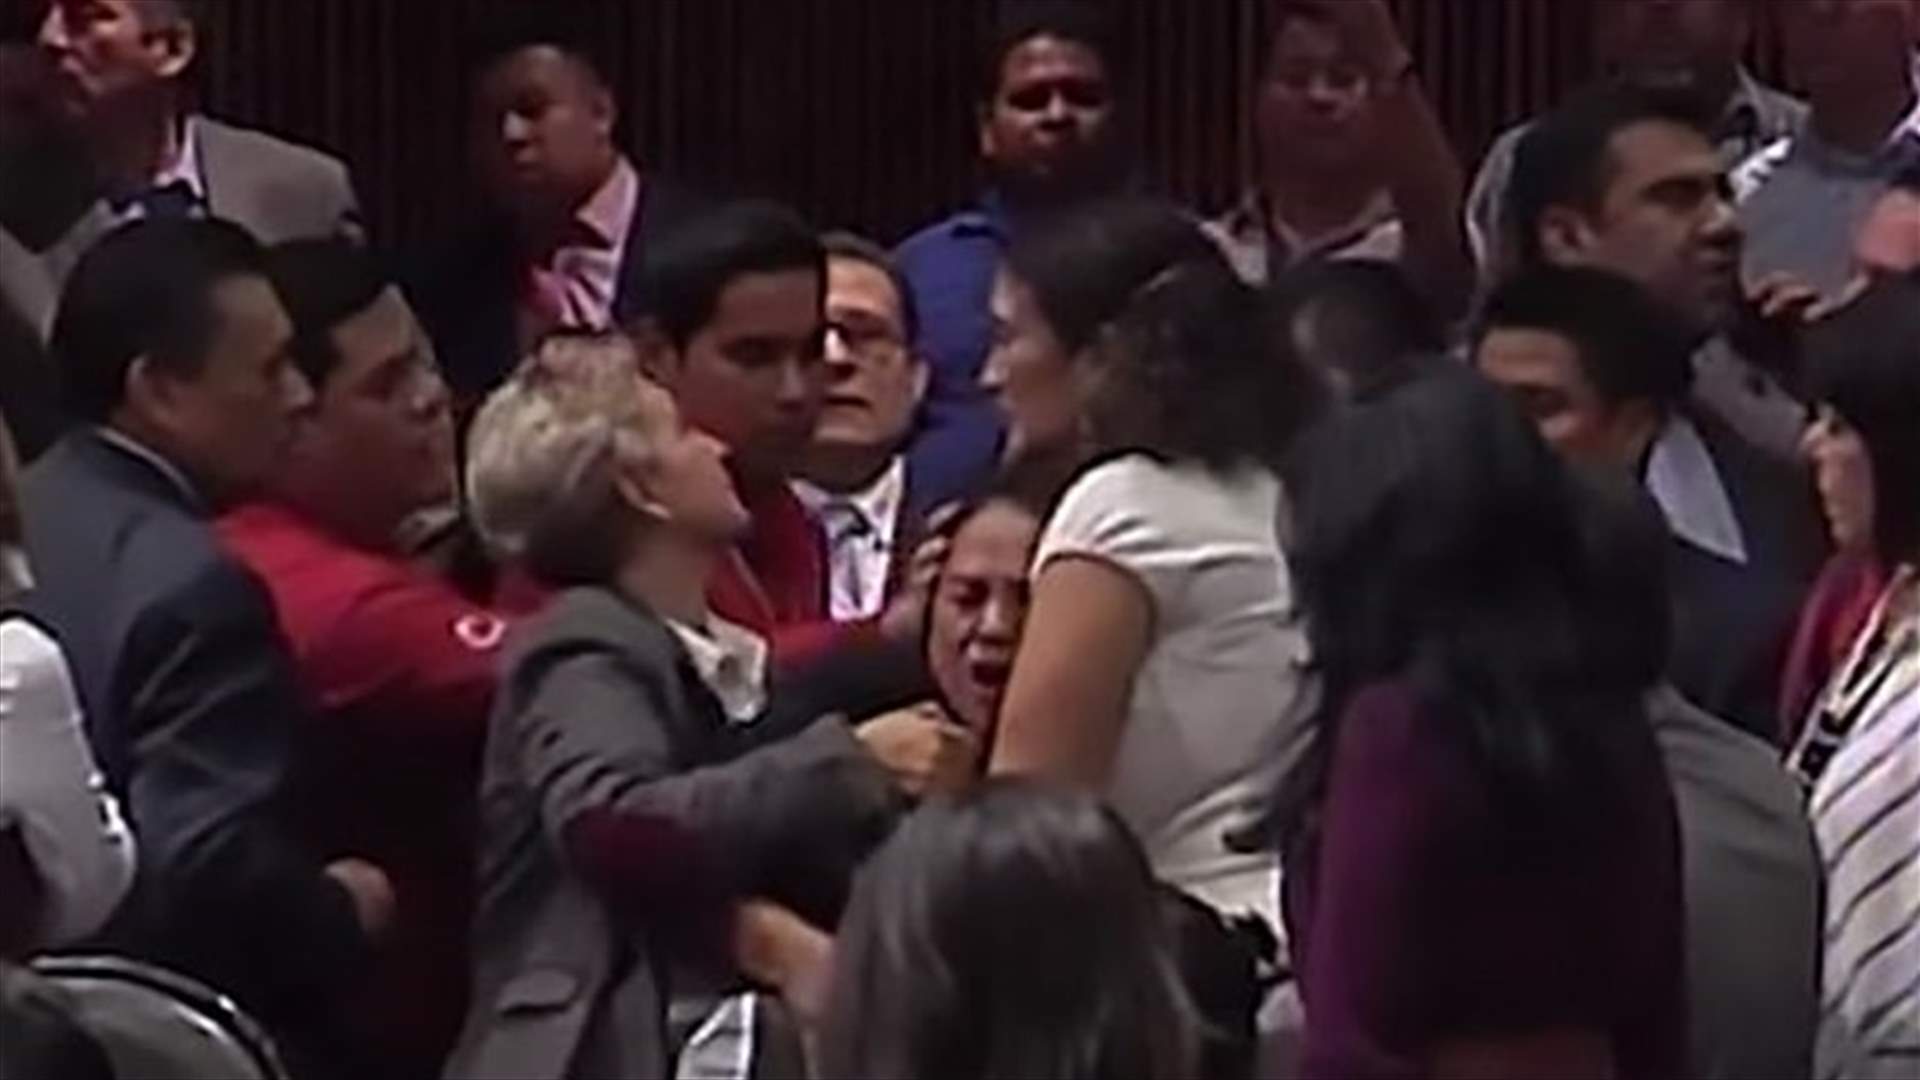 نائب تنهار في البرلمان بعد تلقيها خبر وفاة ابنتها (فيديو)